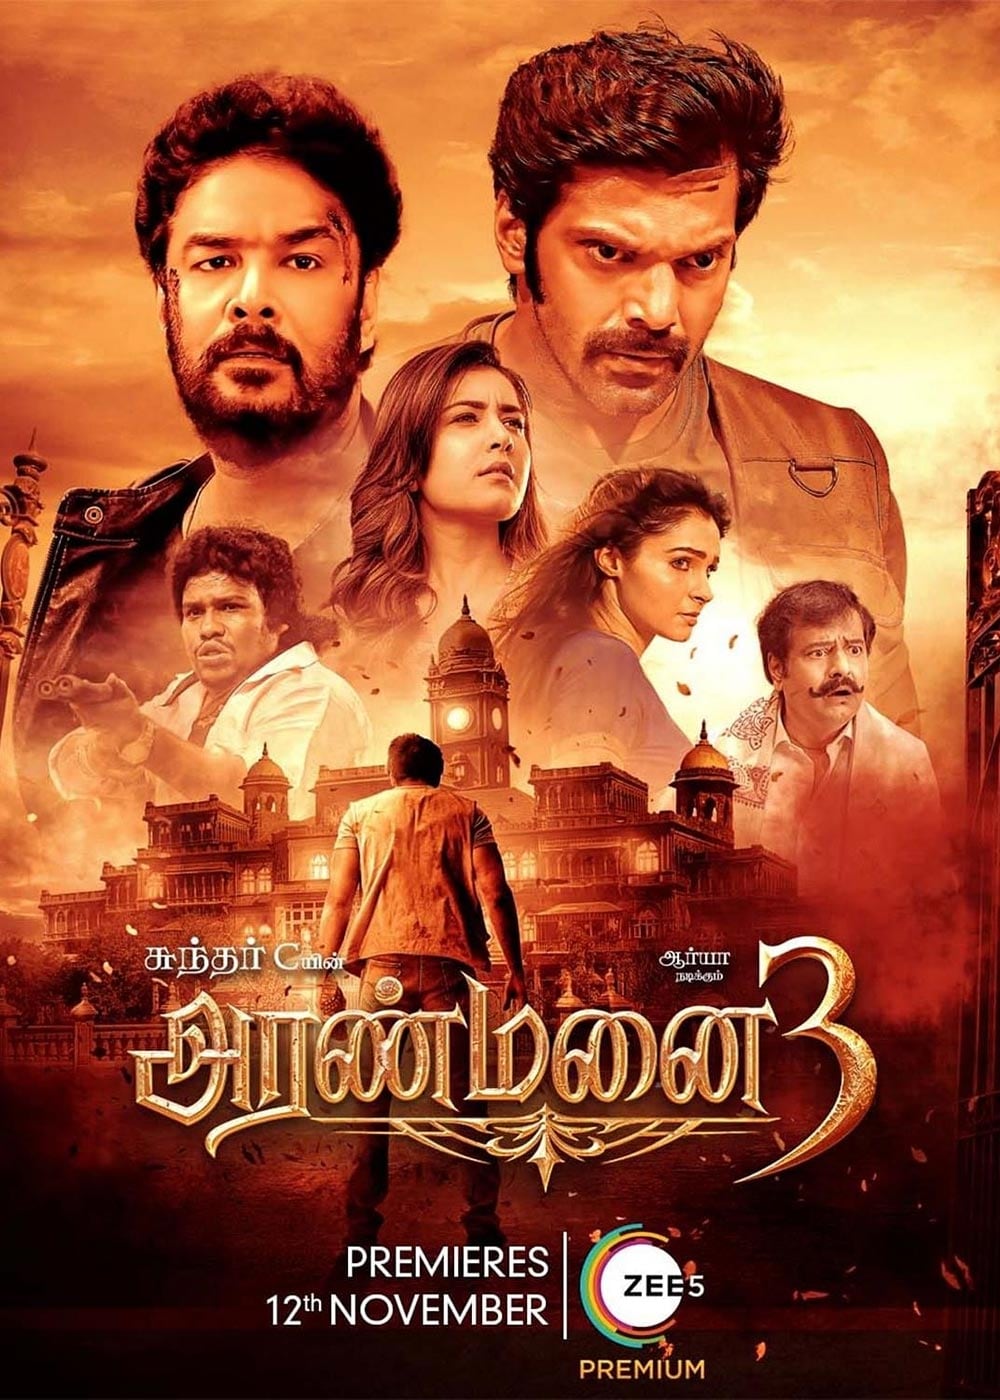 aranmanai 3 movie review in tamil